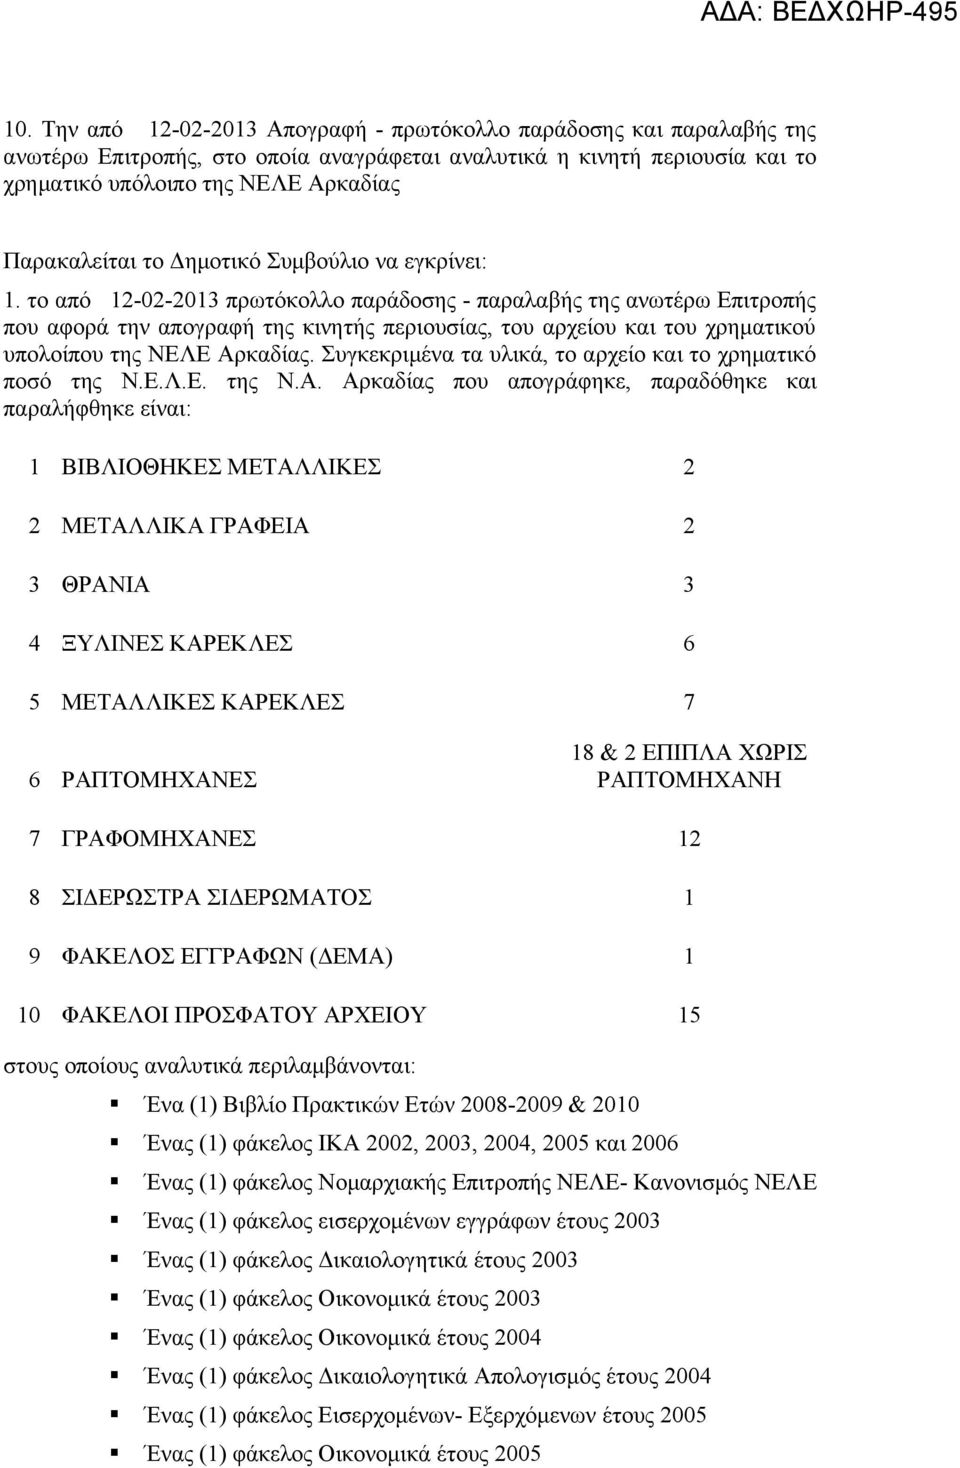 το από 12-02-2013 πρωτόκολλο παράδοσης - παραλαβής της ανωτέρω Επιτροπής που αφορά την απογραφή της κινητής περιουσίας, του αρχείου και του χρηματικού υπολοίπου της ΝΕΛΕ Αρκαδίας.